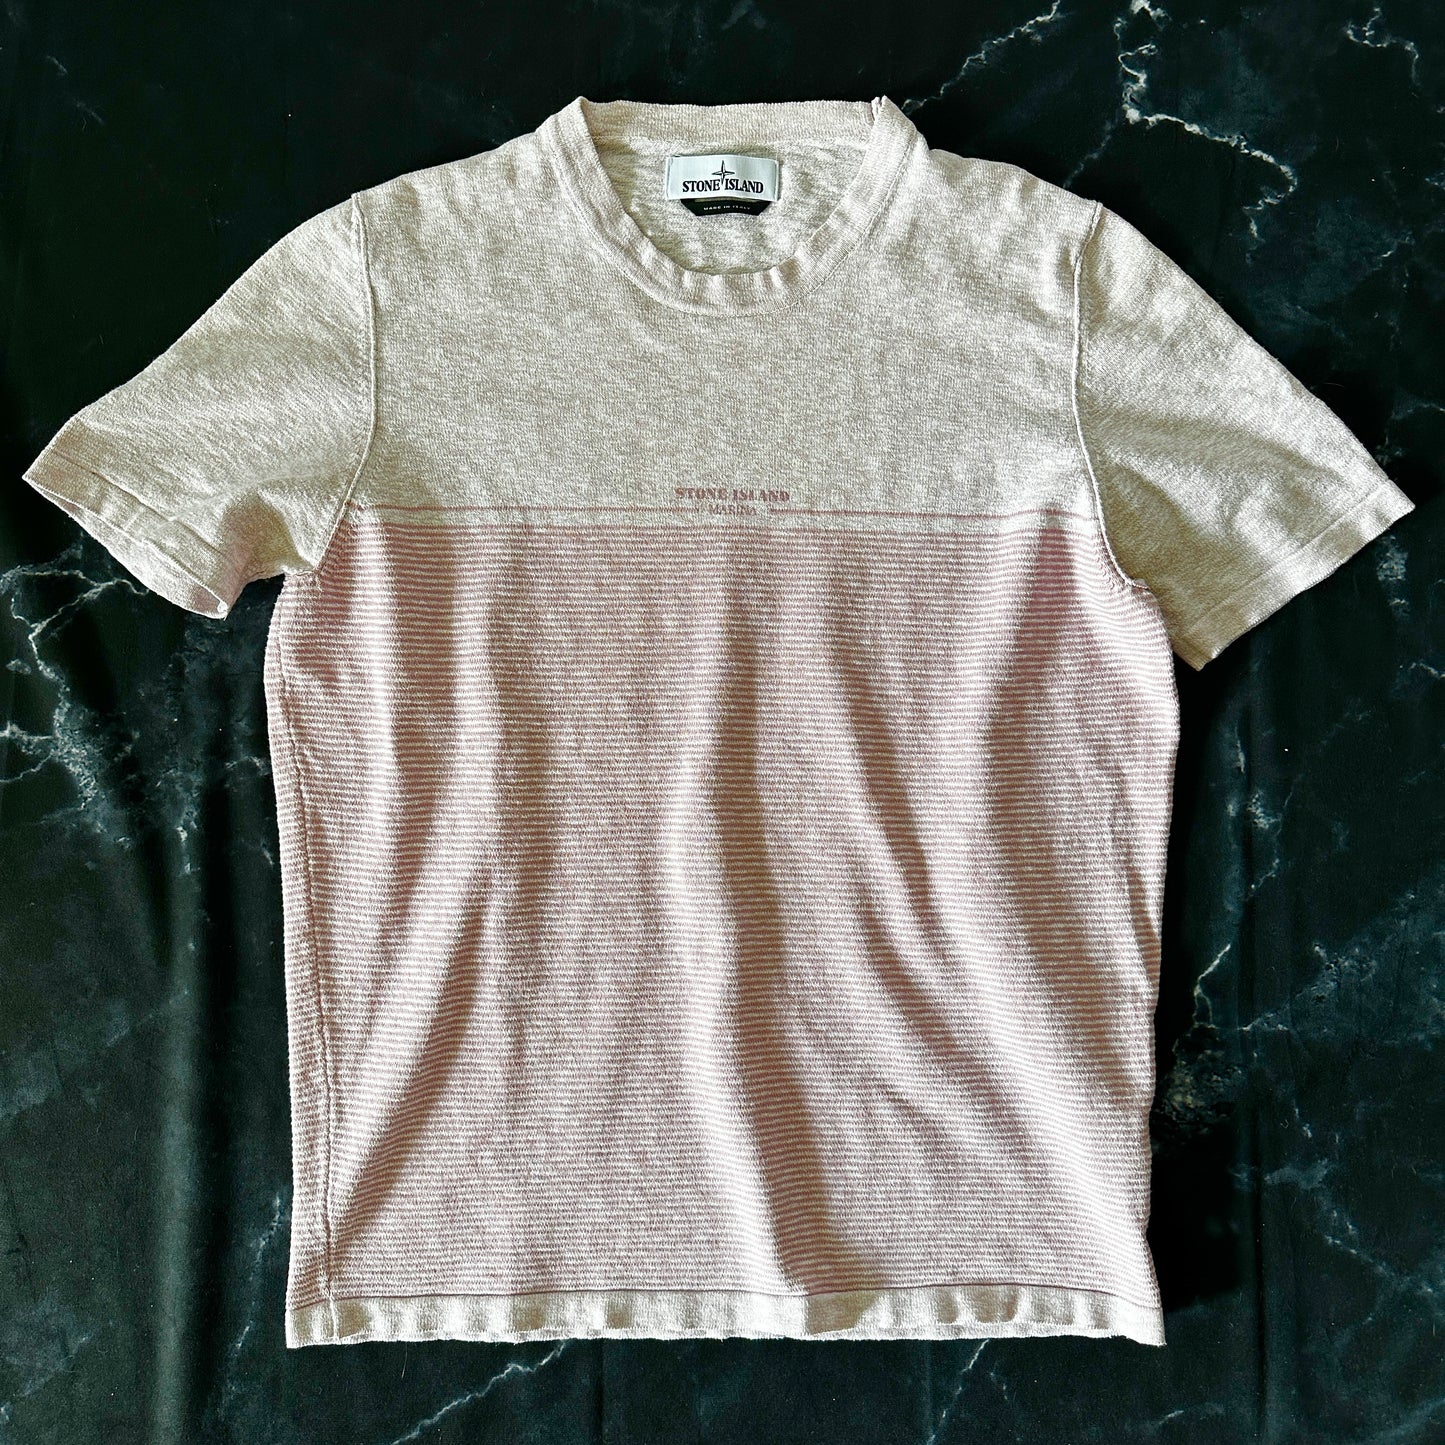 Stone Island Marina T-Shirt 2017 - L - Made in Italy